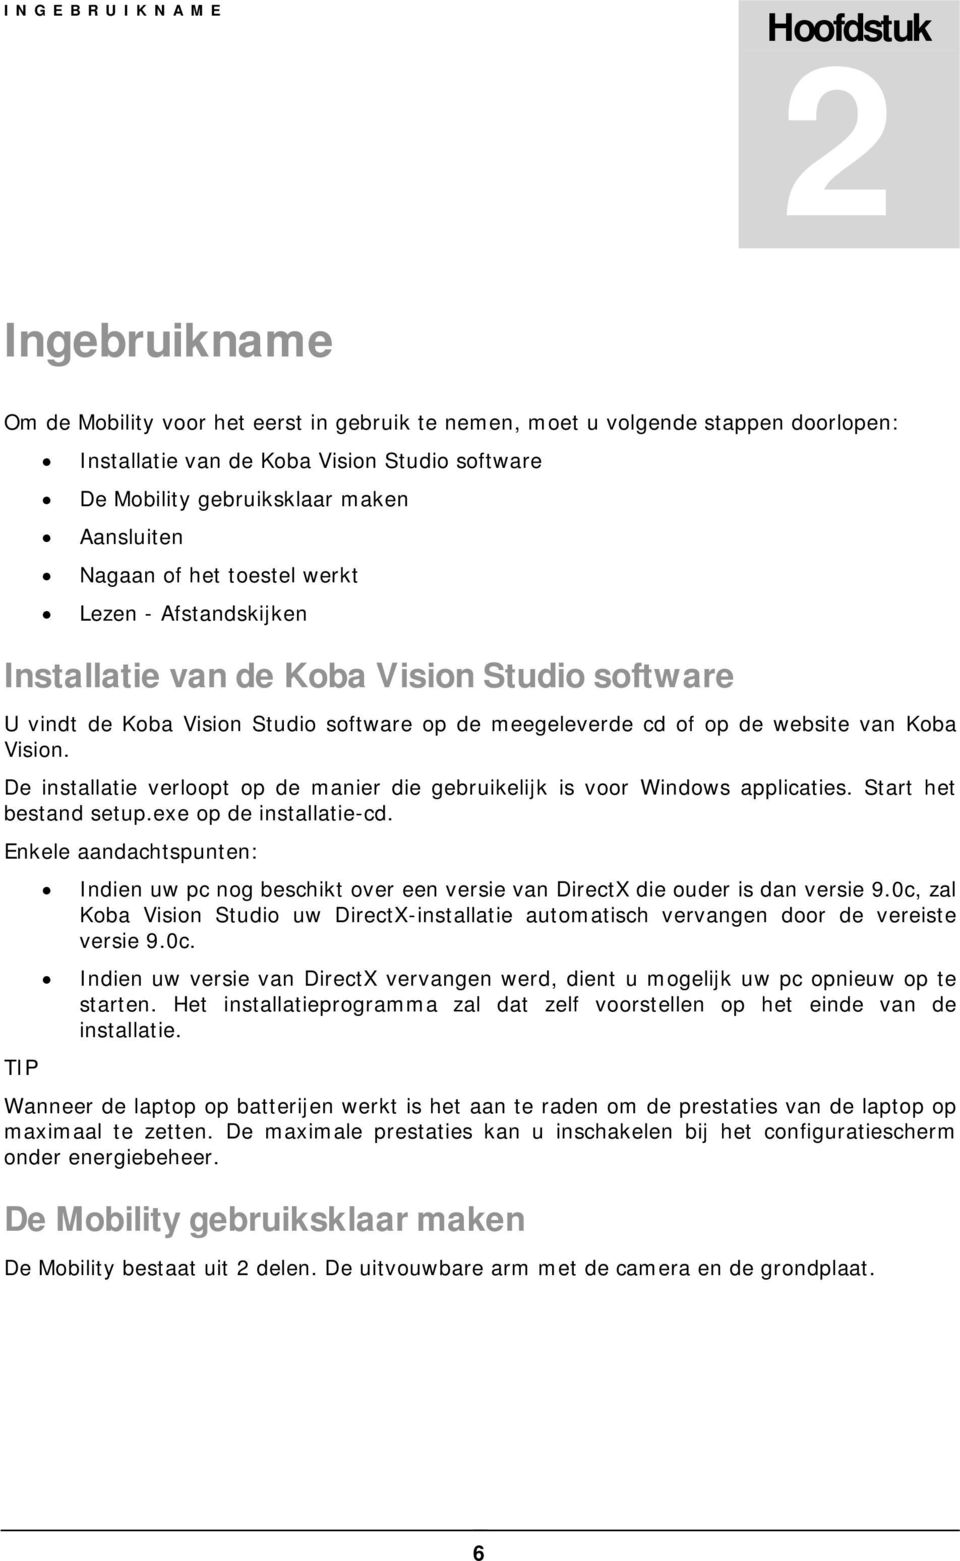 Koba Vision. De installatie verloopt op de manier die gebruikelijk is voor Windows applicaties. Start het bestand setup.exe op de installatie-cd.